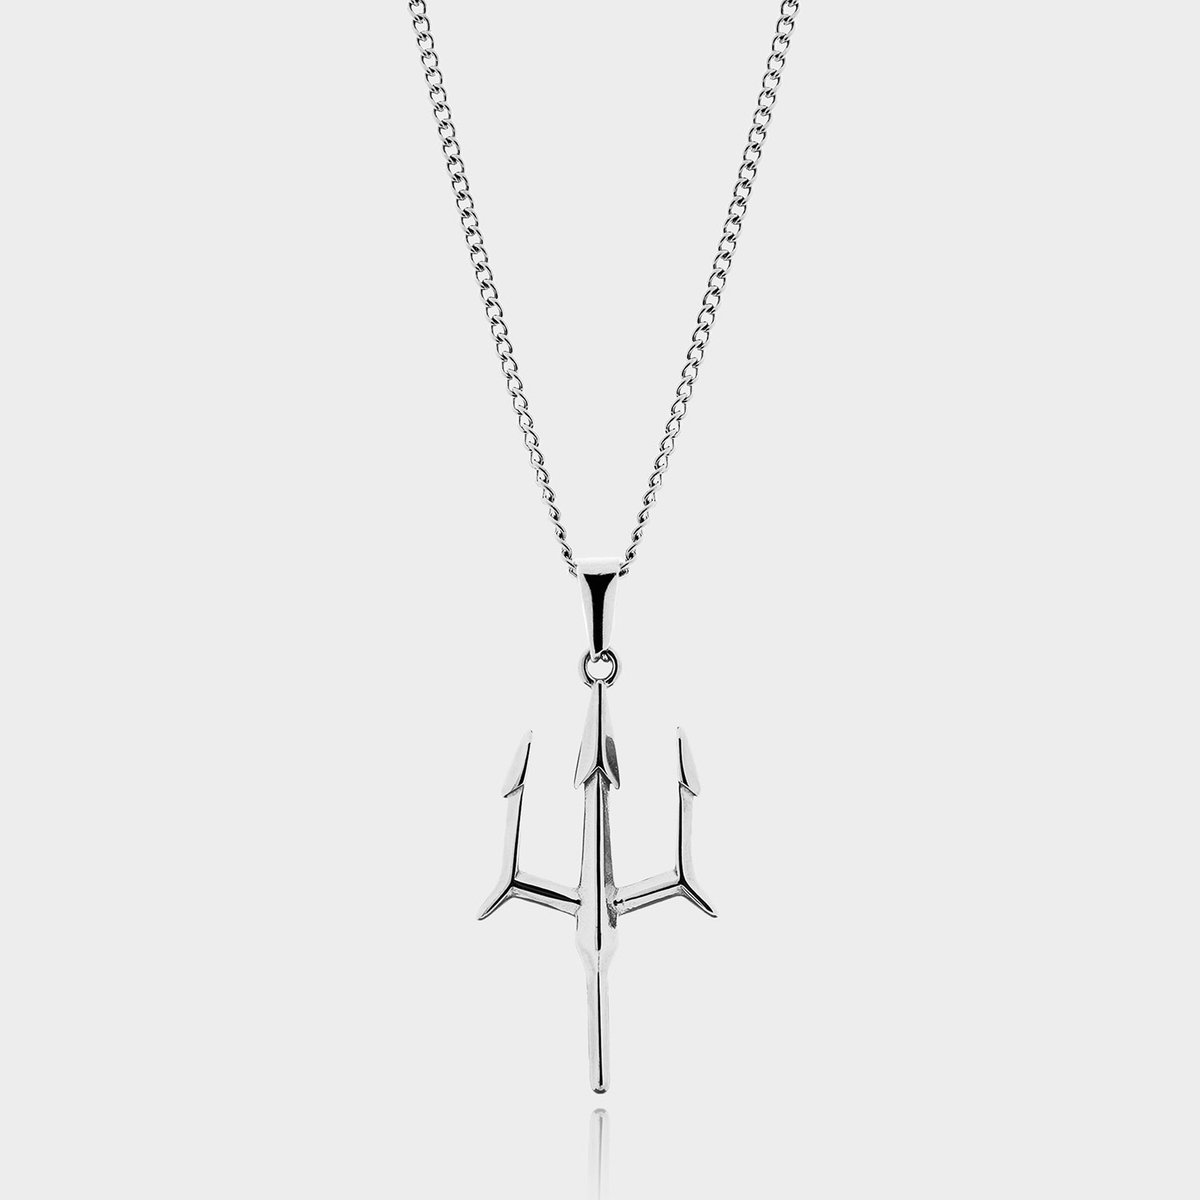 Trident Spear Drietand Hanger Ketting - Zilveren Trident Spear Pendant Ketting - 50 cm lang - Ketting Heren met Hanger - Griekse Mythen - Olympus Jewelry